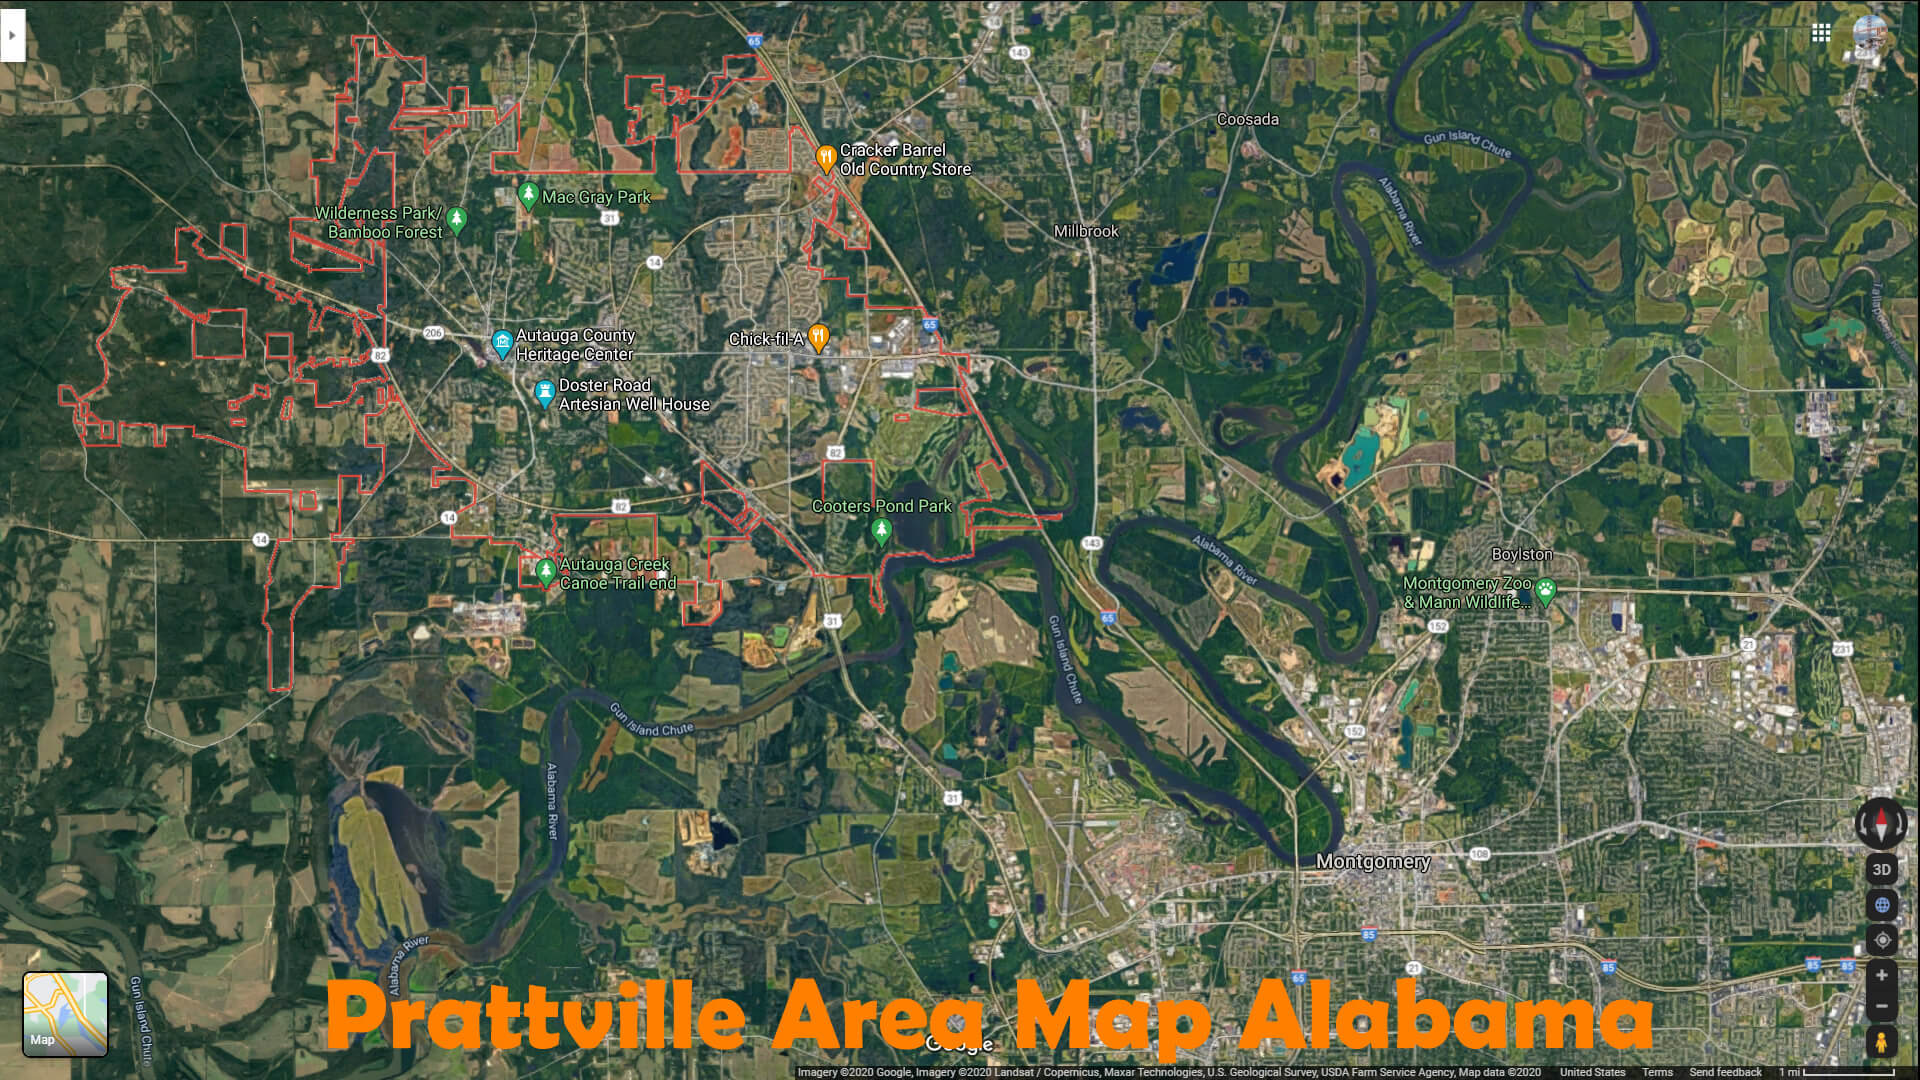 Prattville Area Map Alabama